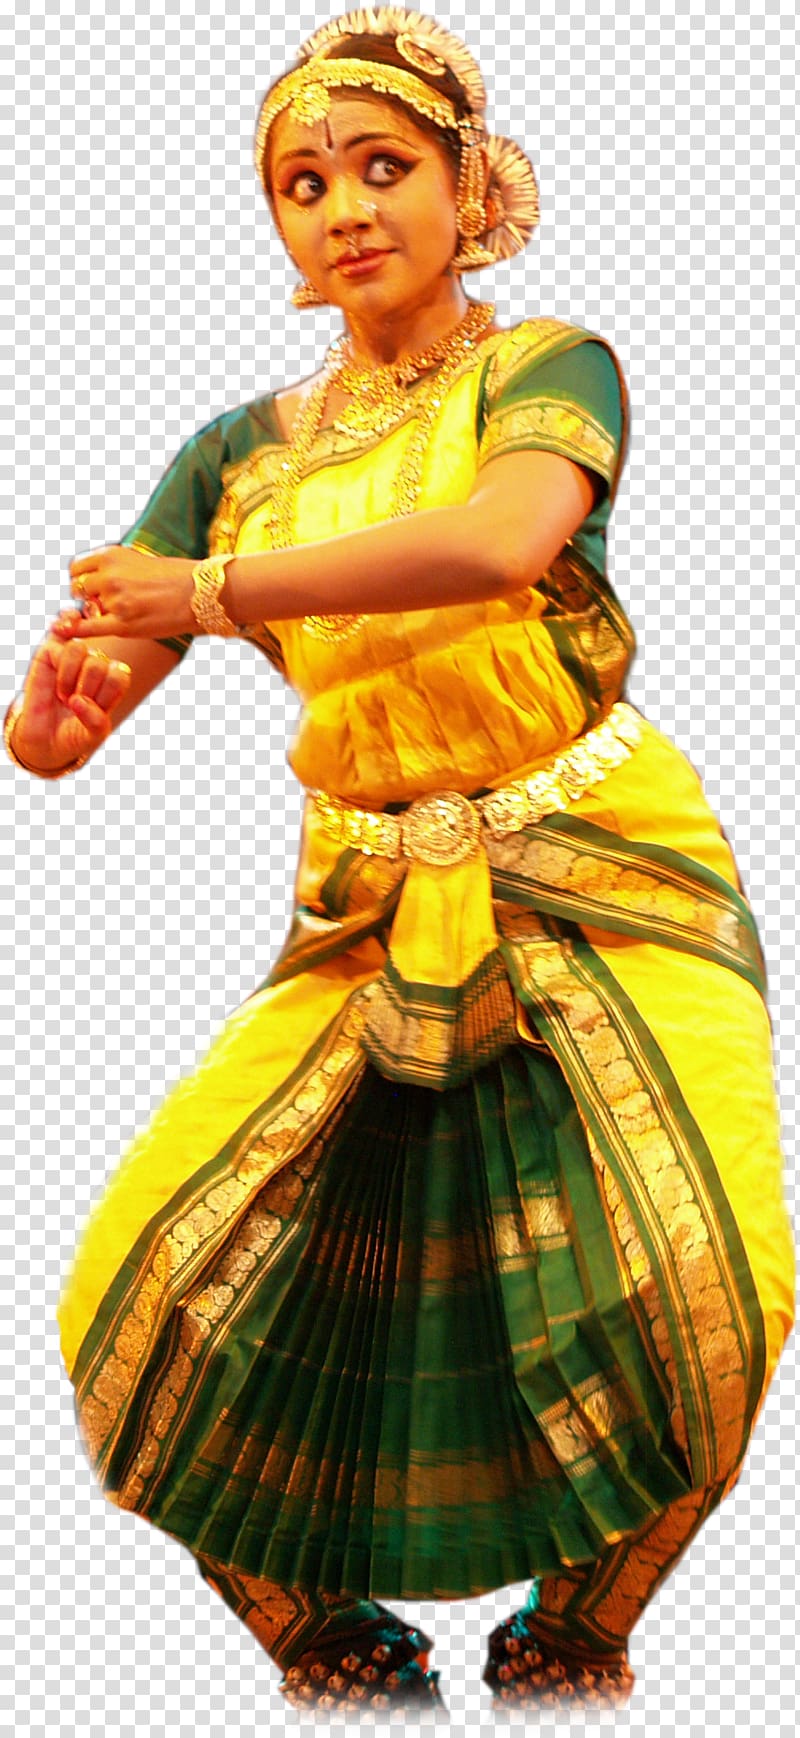 Manjula Natya Shastra Bharatanatyam Indian classical dance, onam transparent background PNG clipart